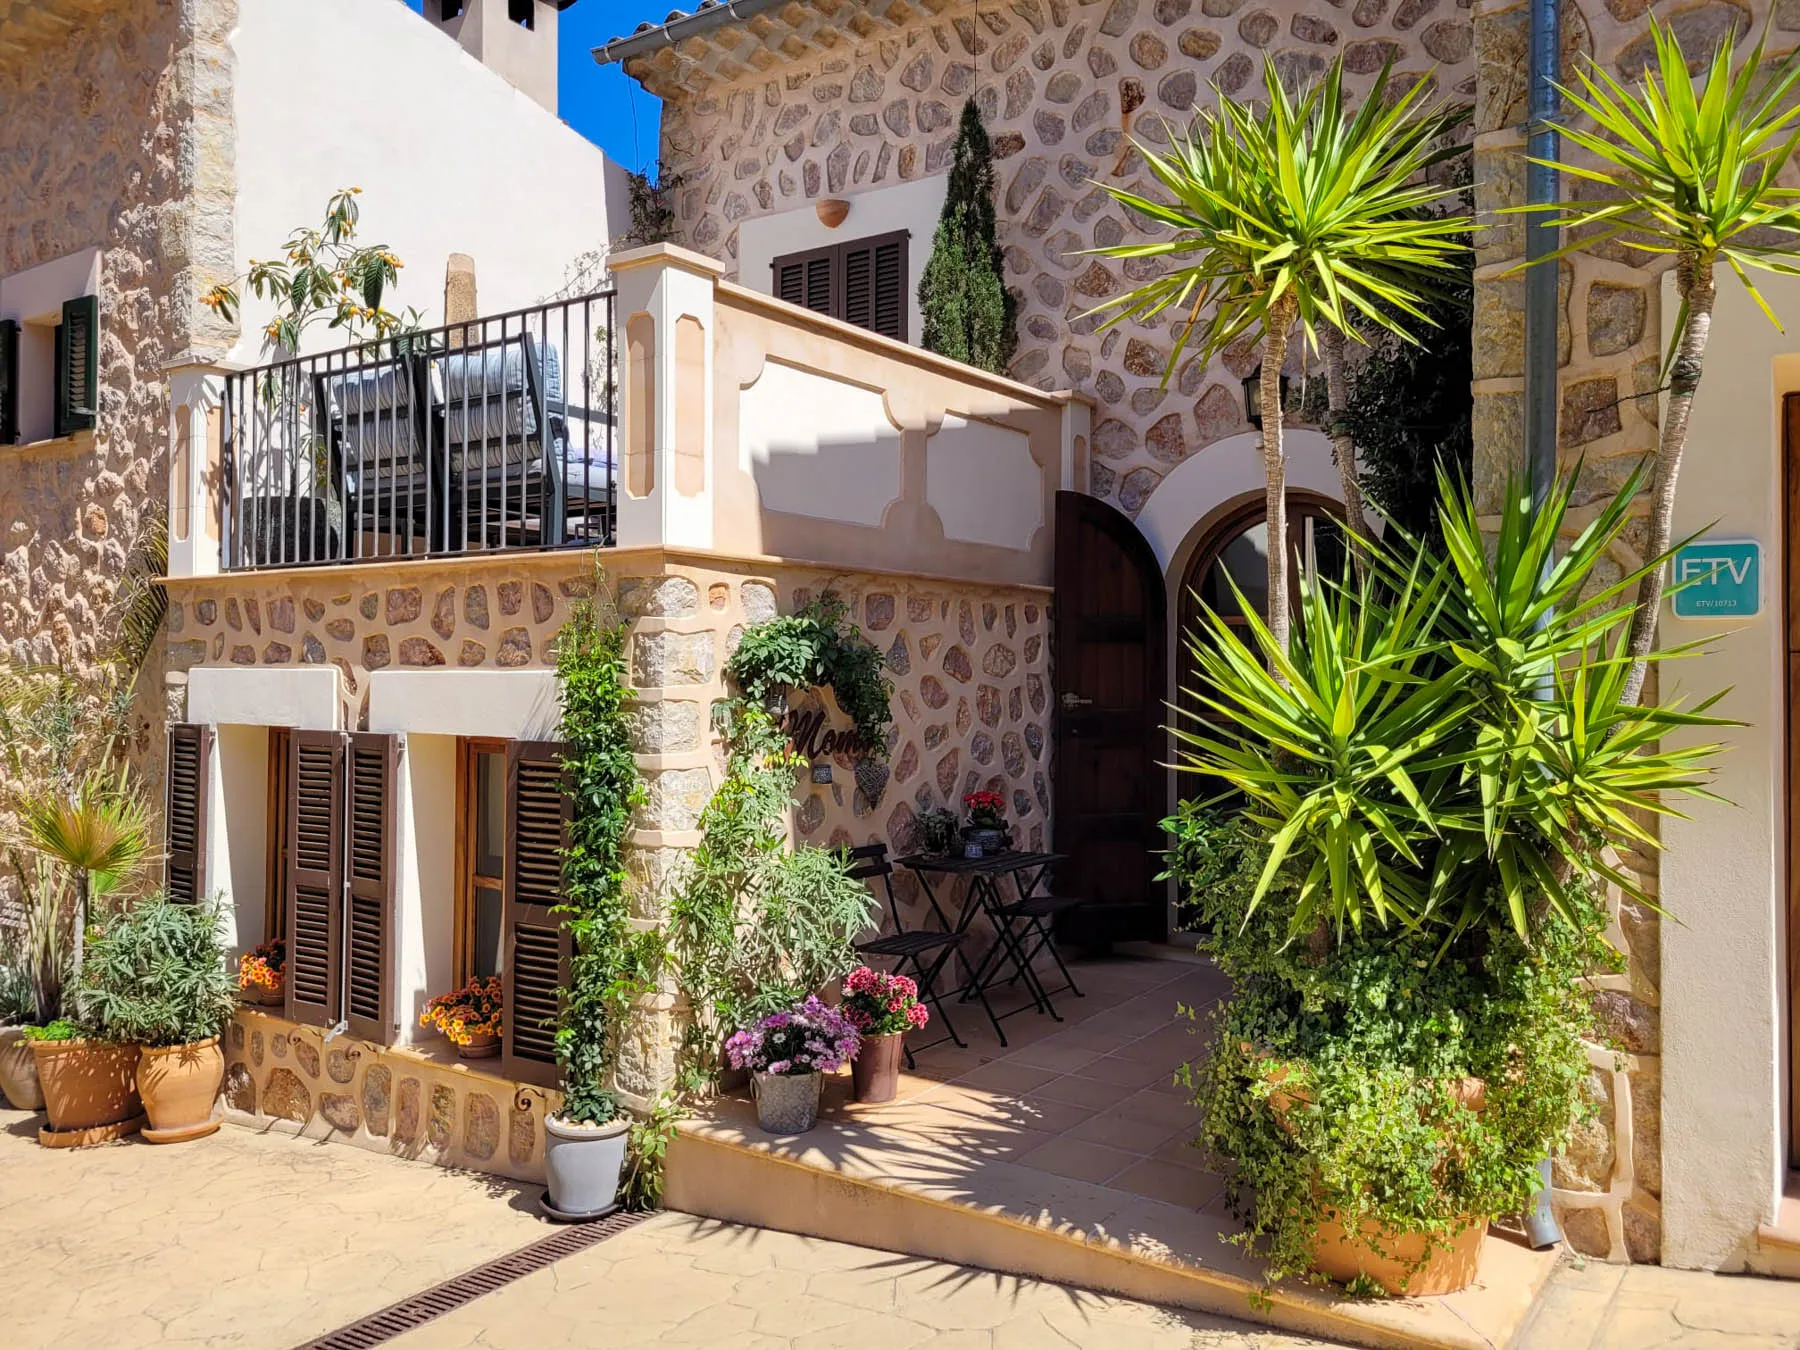 CM-S01.755_Casas_Mallorca_Real_Estate_House_Fornalutx_Facade_ETV